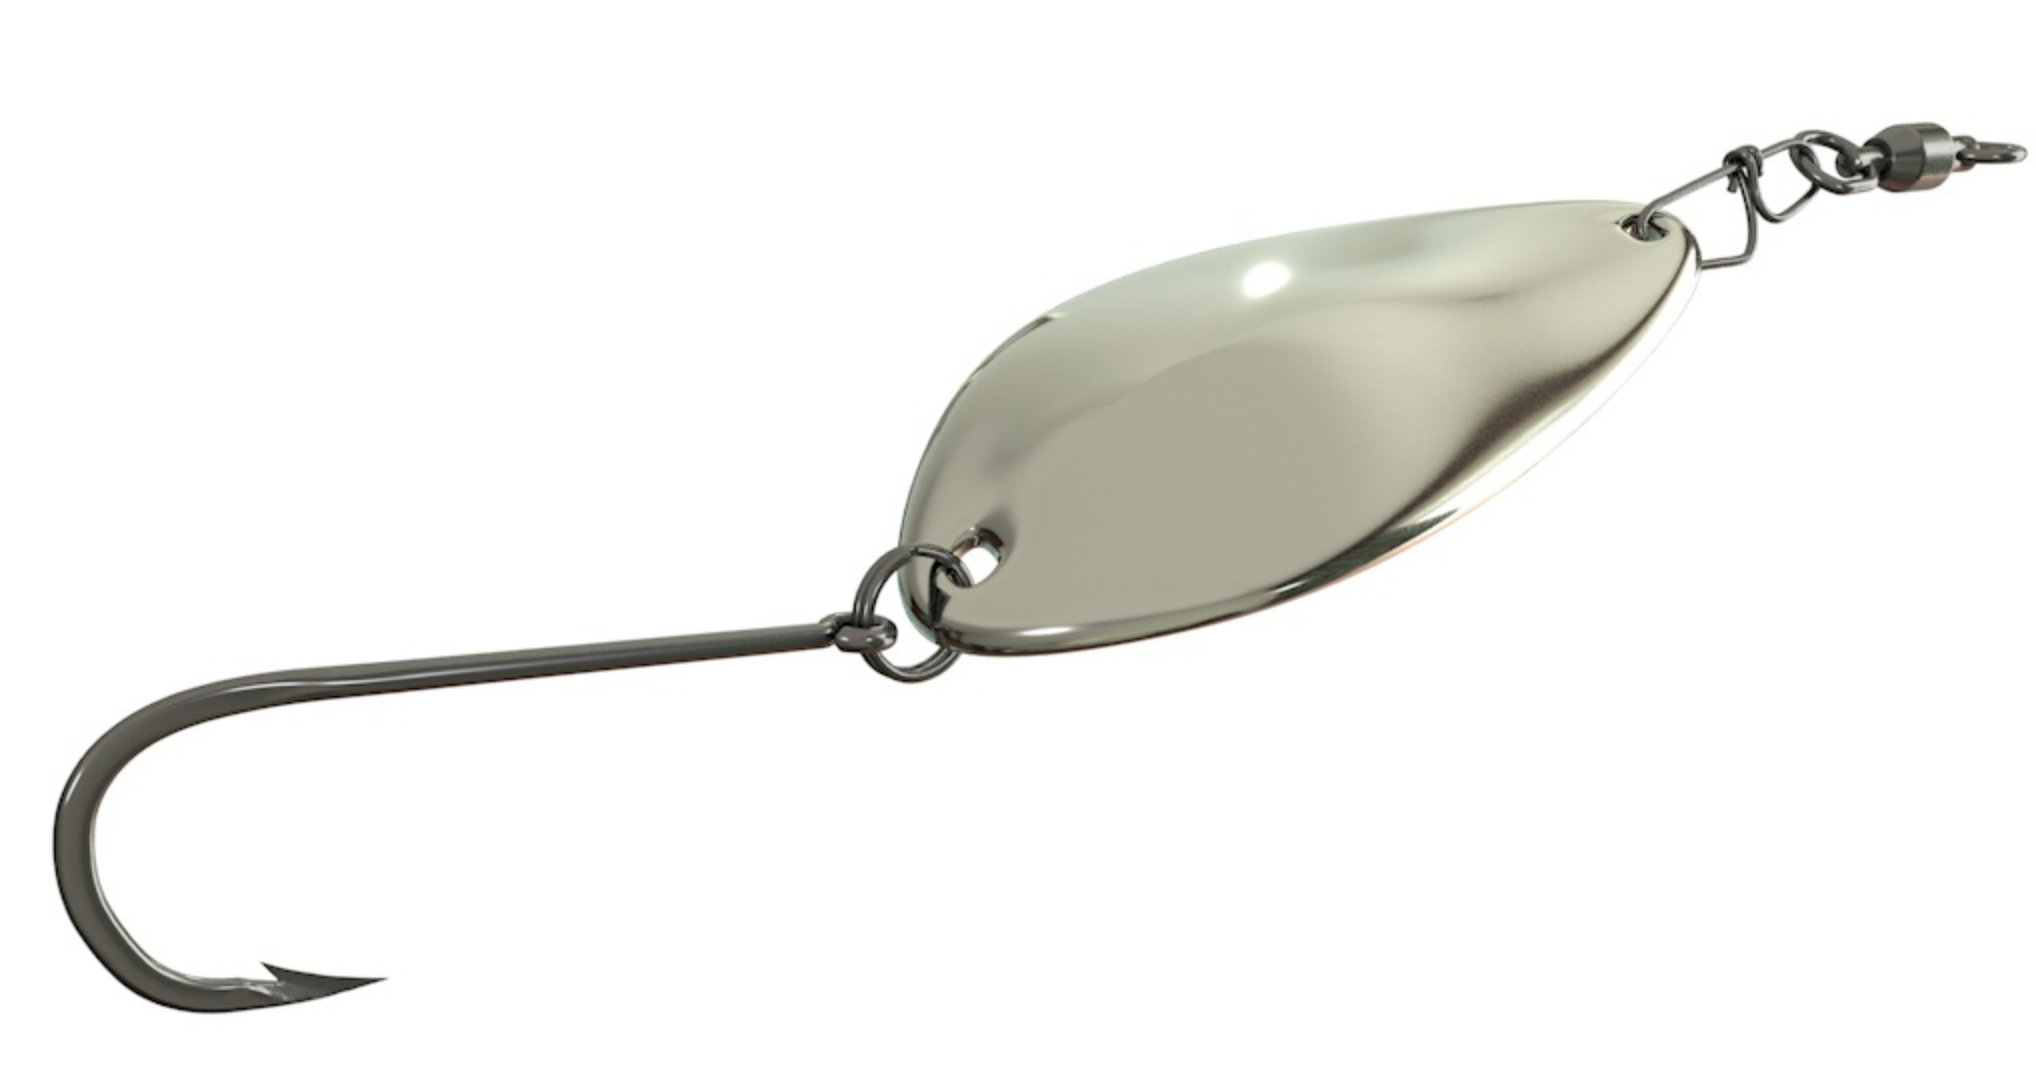 stainless steel fishing spoon, stainless steel fishing spoon